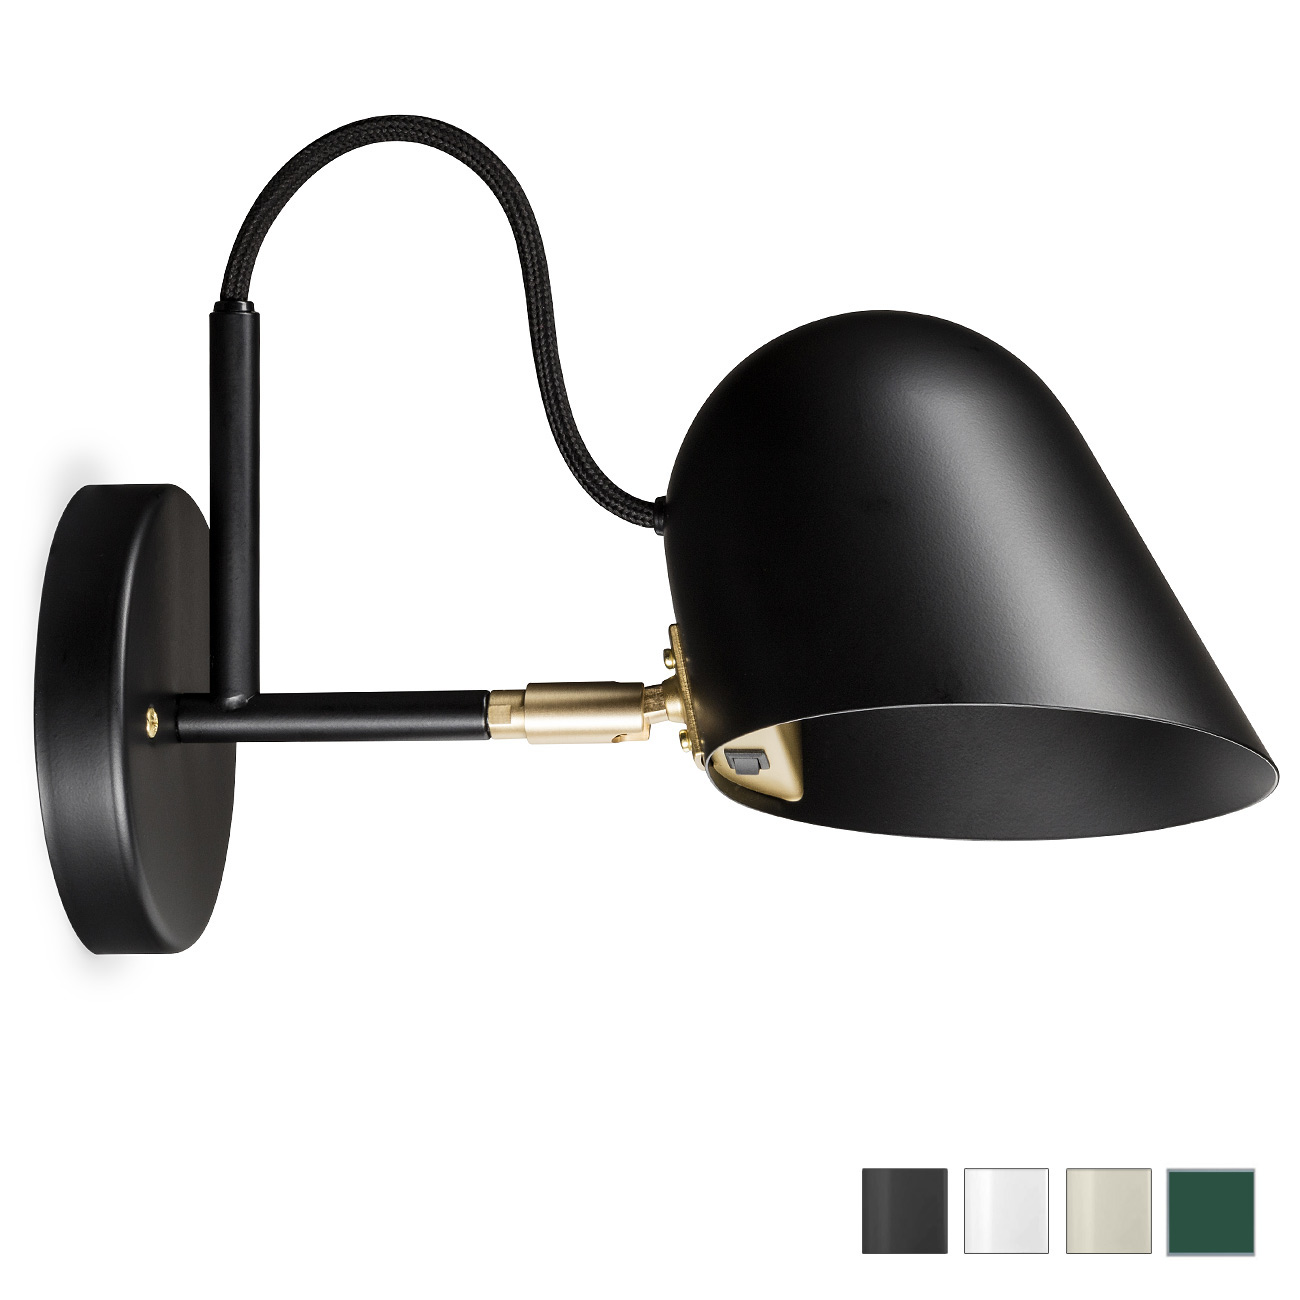 Moderne schwedische Design-Wandleuchte STRECK mit LED: Die schwedische Design-Wandleuchte STRECK mit Schalter im Schirm, schwarz, Version zum Direktanschluss